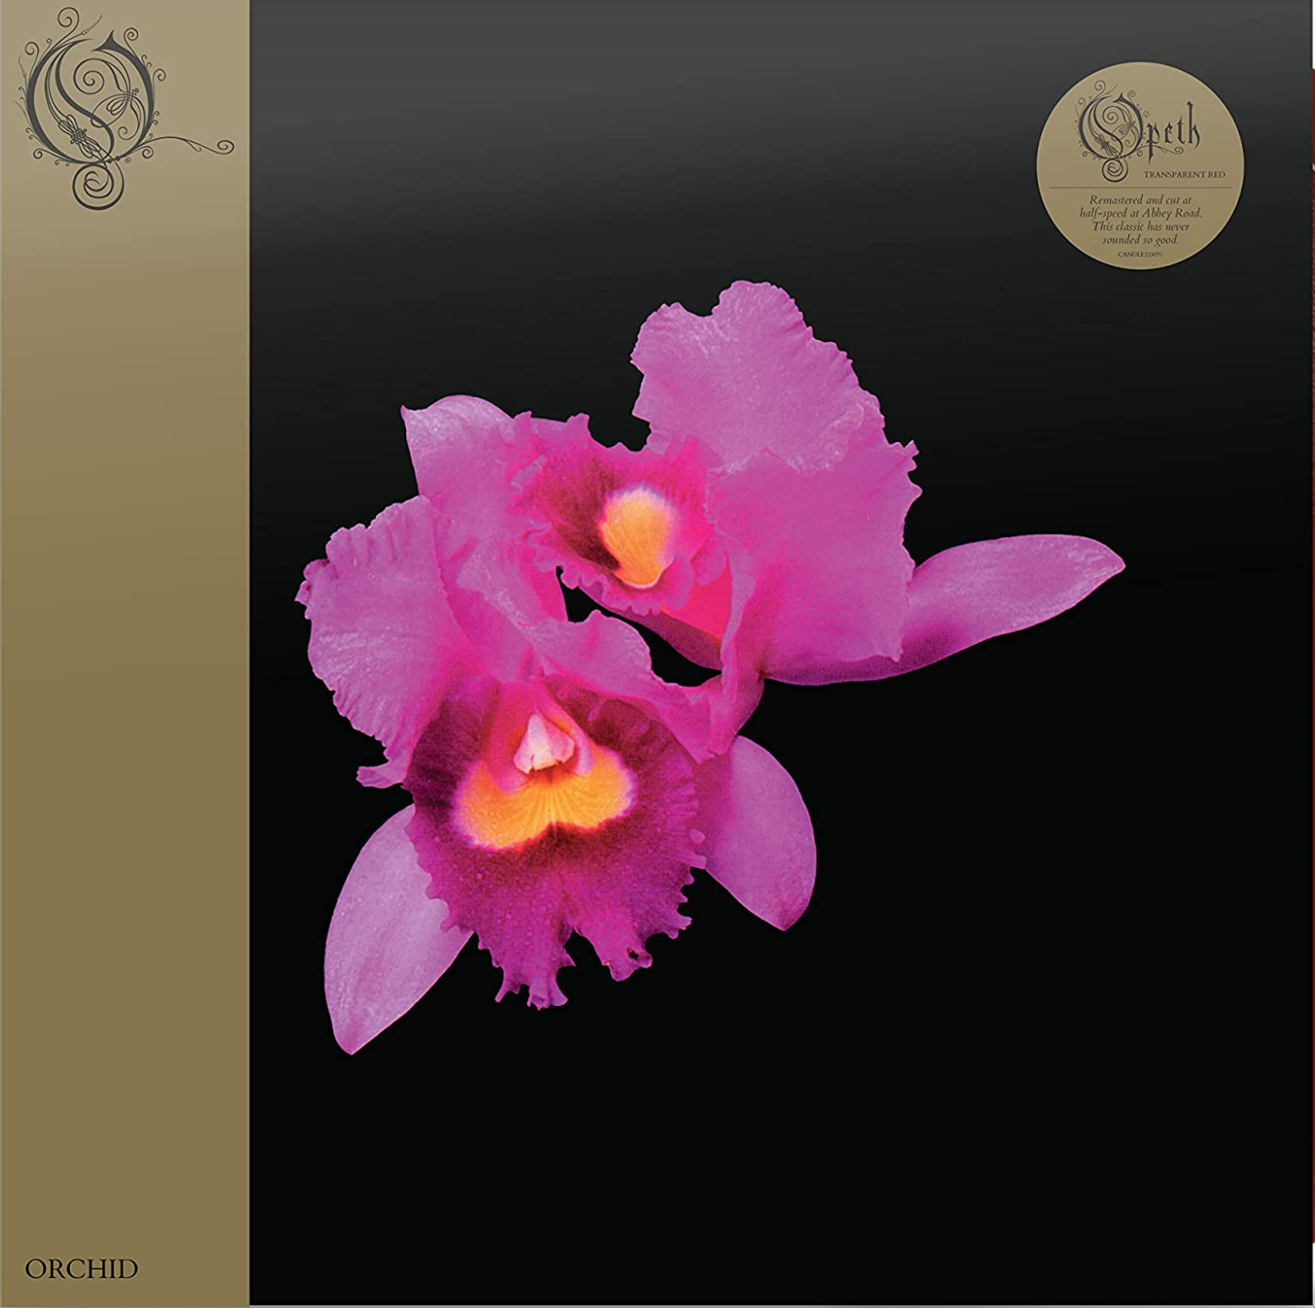 Vinile Opeth - Orchid (Abbey Road Half Speed Master) (Red Vinyl) NUOVO SIGILLATO, EDIZIONE DEL 02/06/2023 SUBITO DISPONIBILE